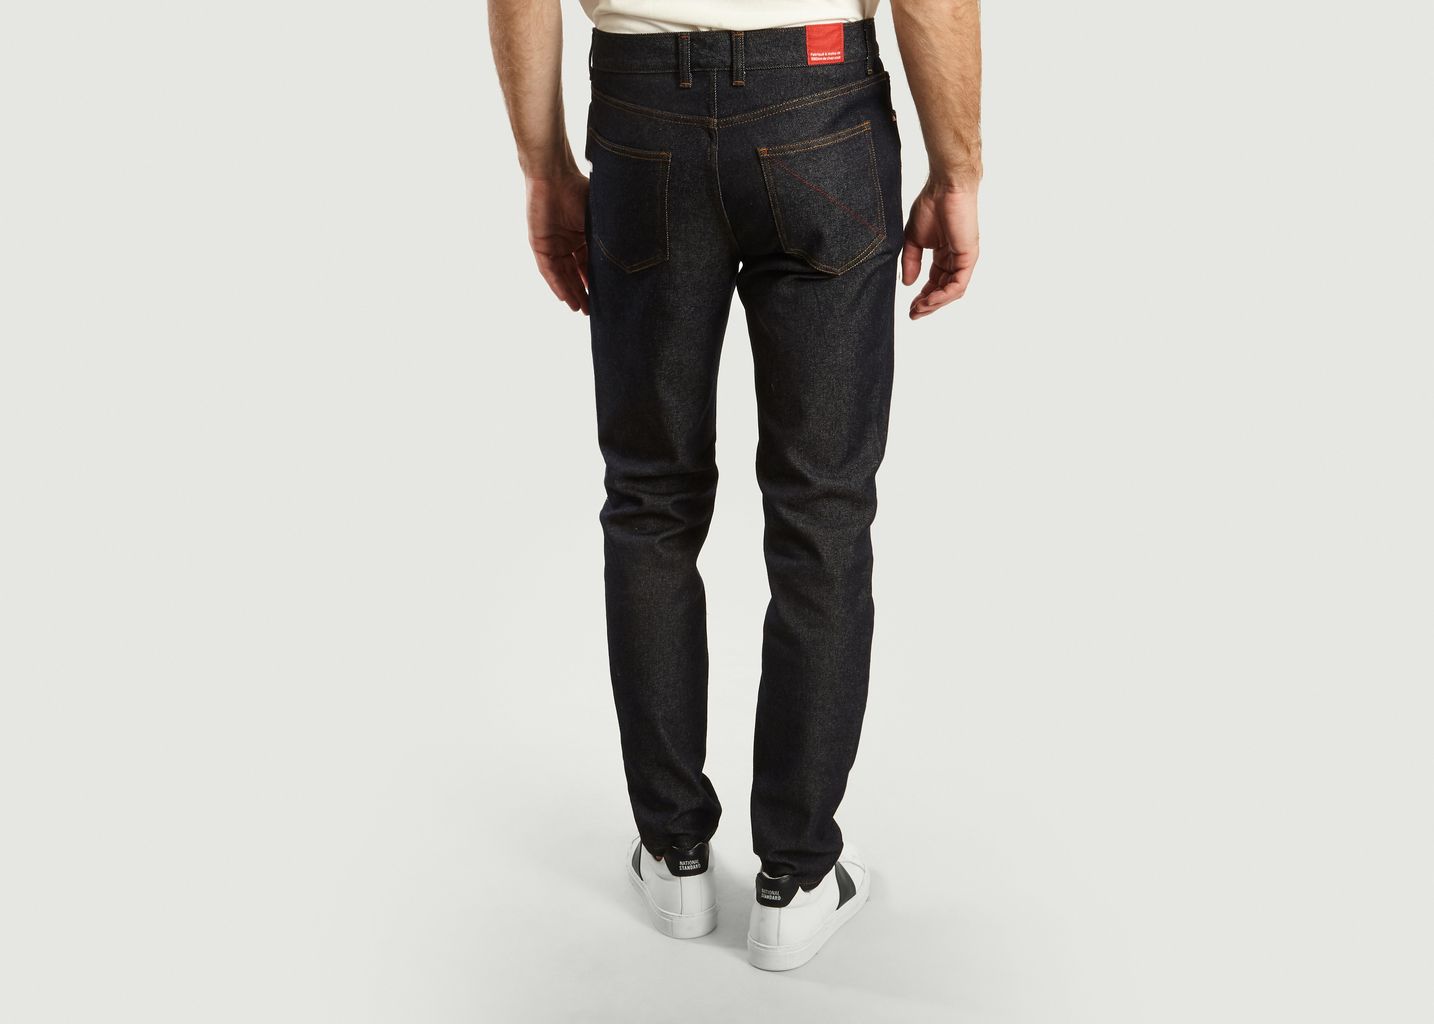 L'Athlétique jeans - 1083